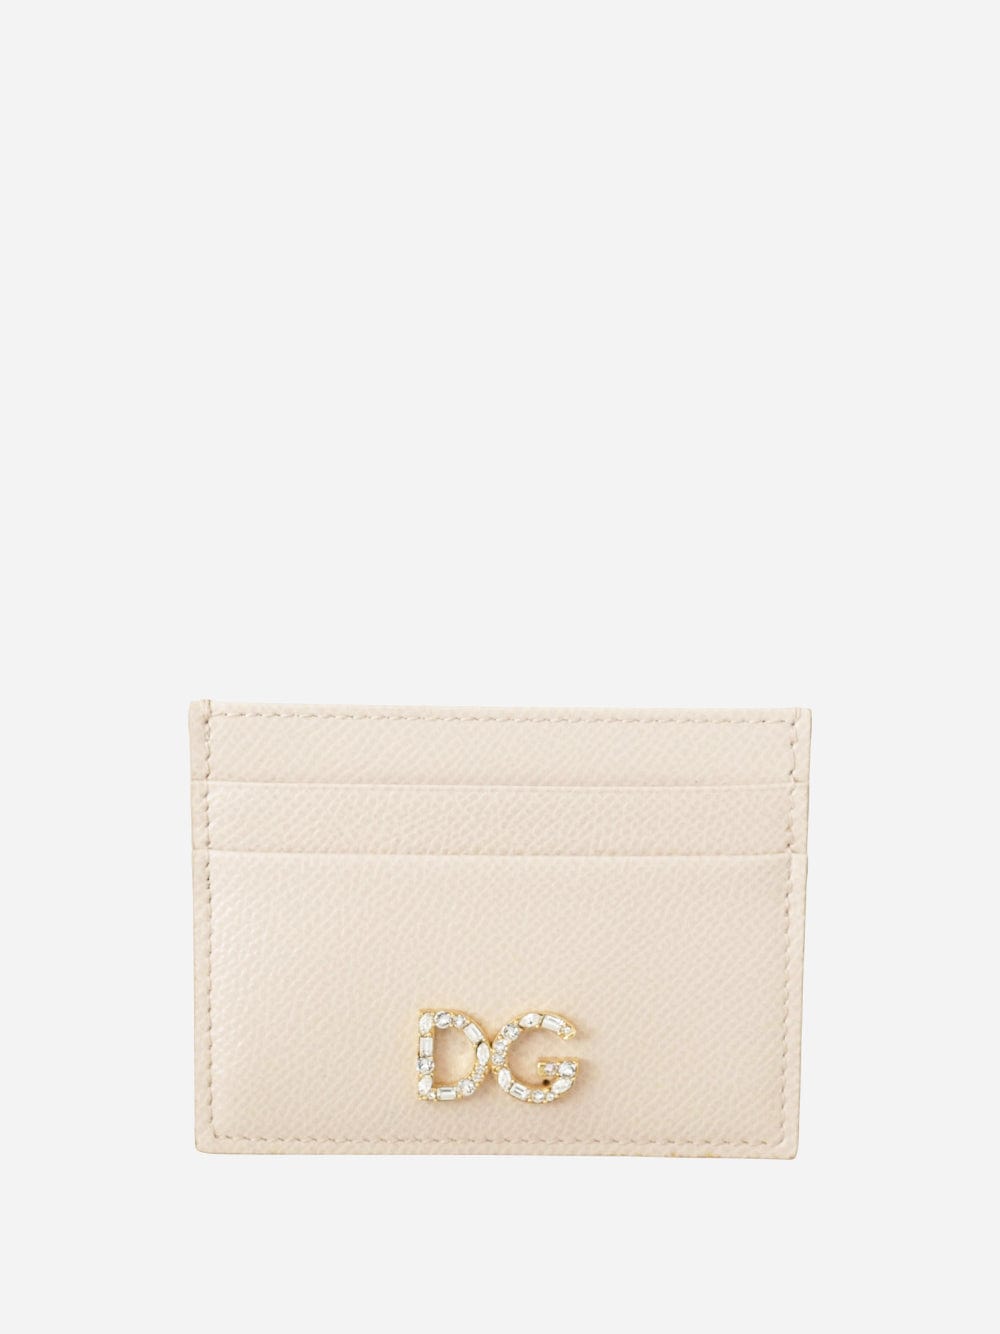 Dolce & Gabbana Jewel Embellished Cardholder